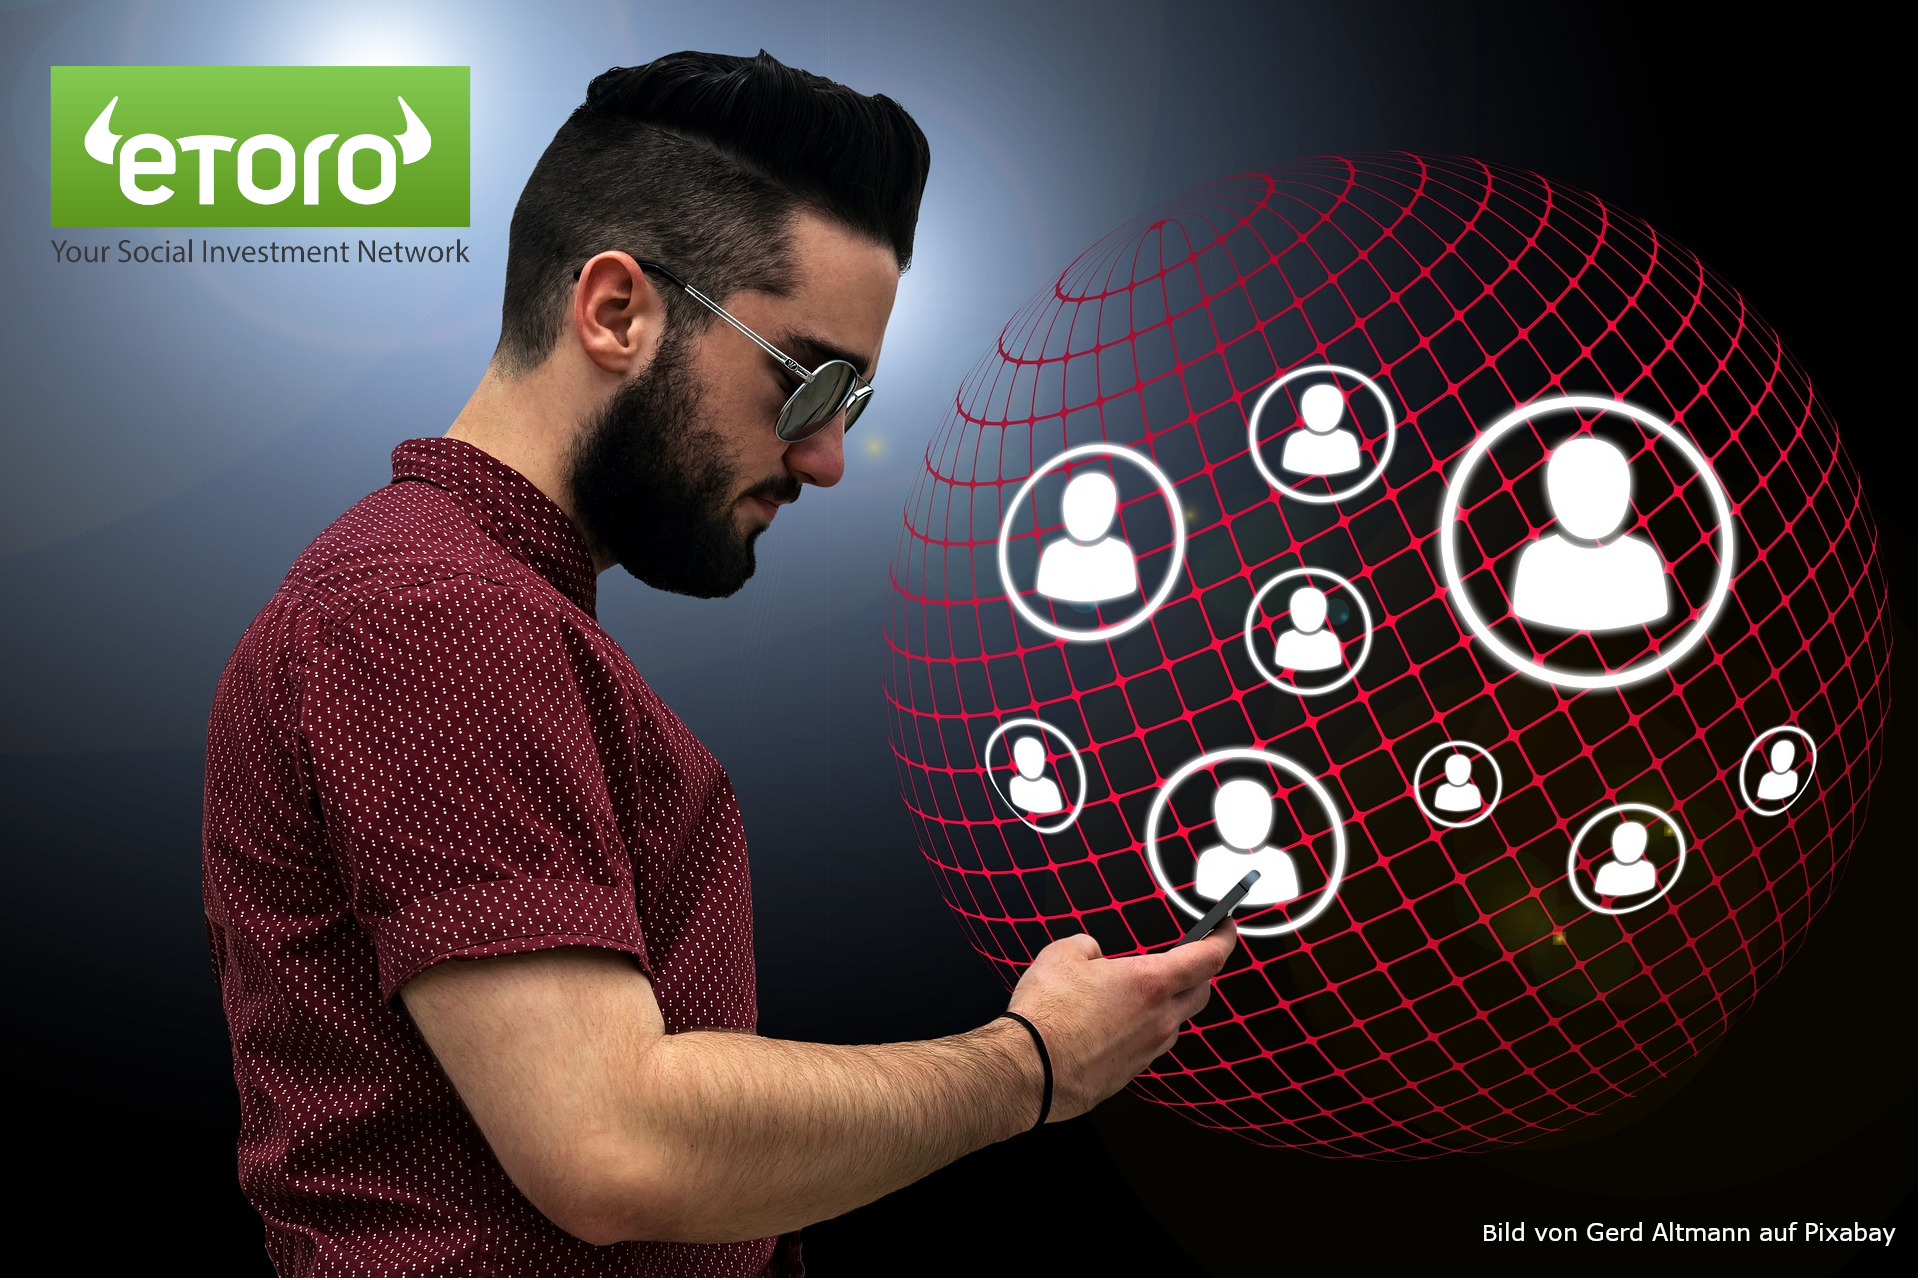 Lerne mit eToro die Welt des Investierens kennen und eröffne dir neue Möglichkeiten!